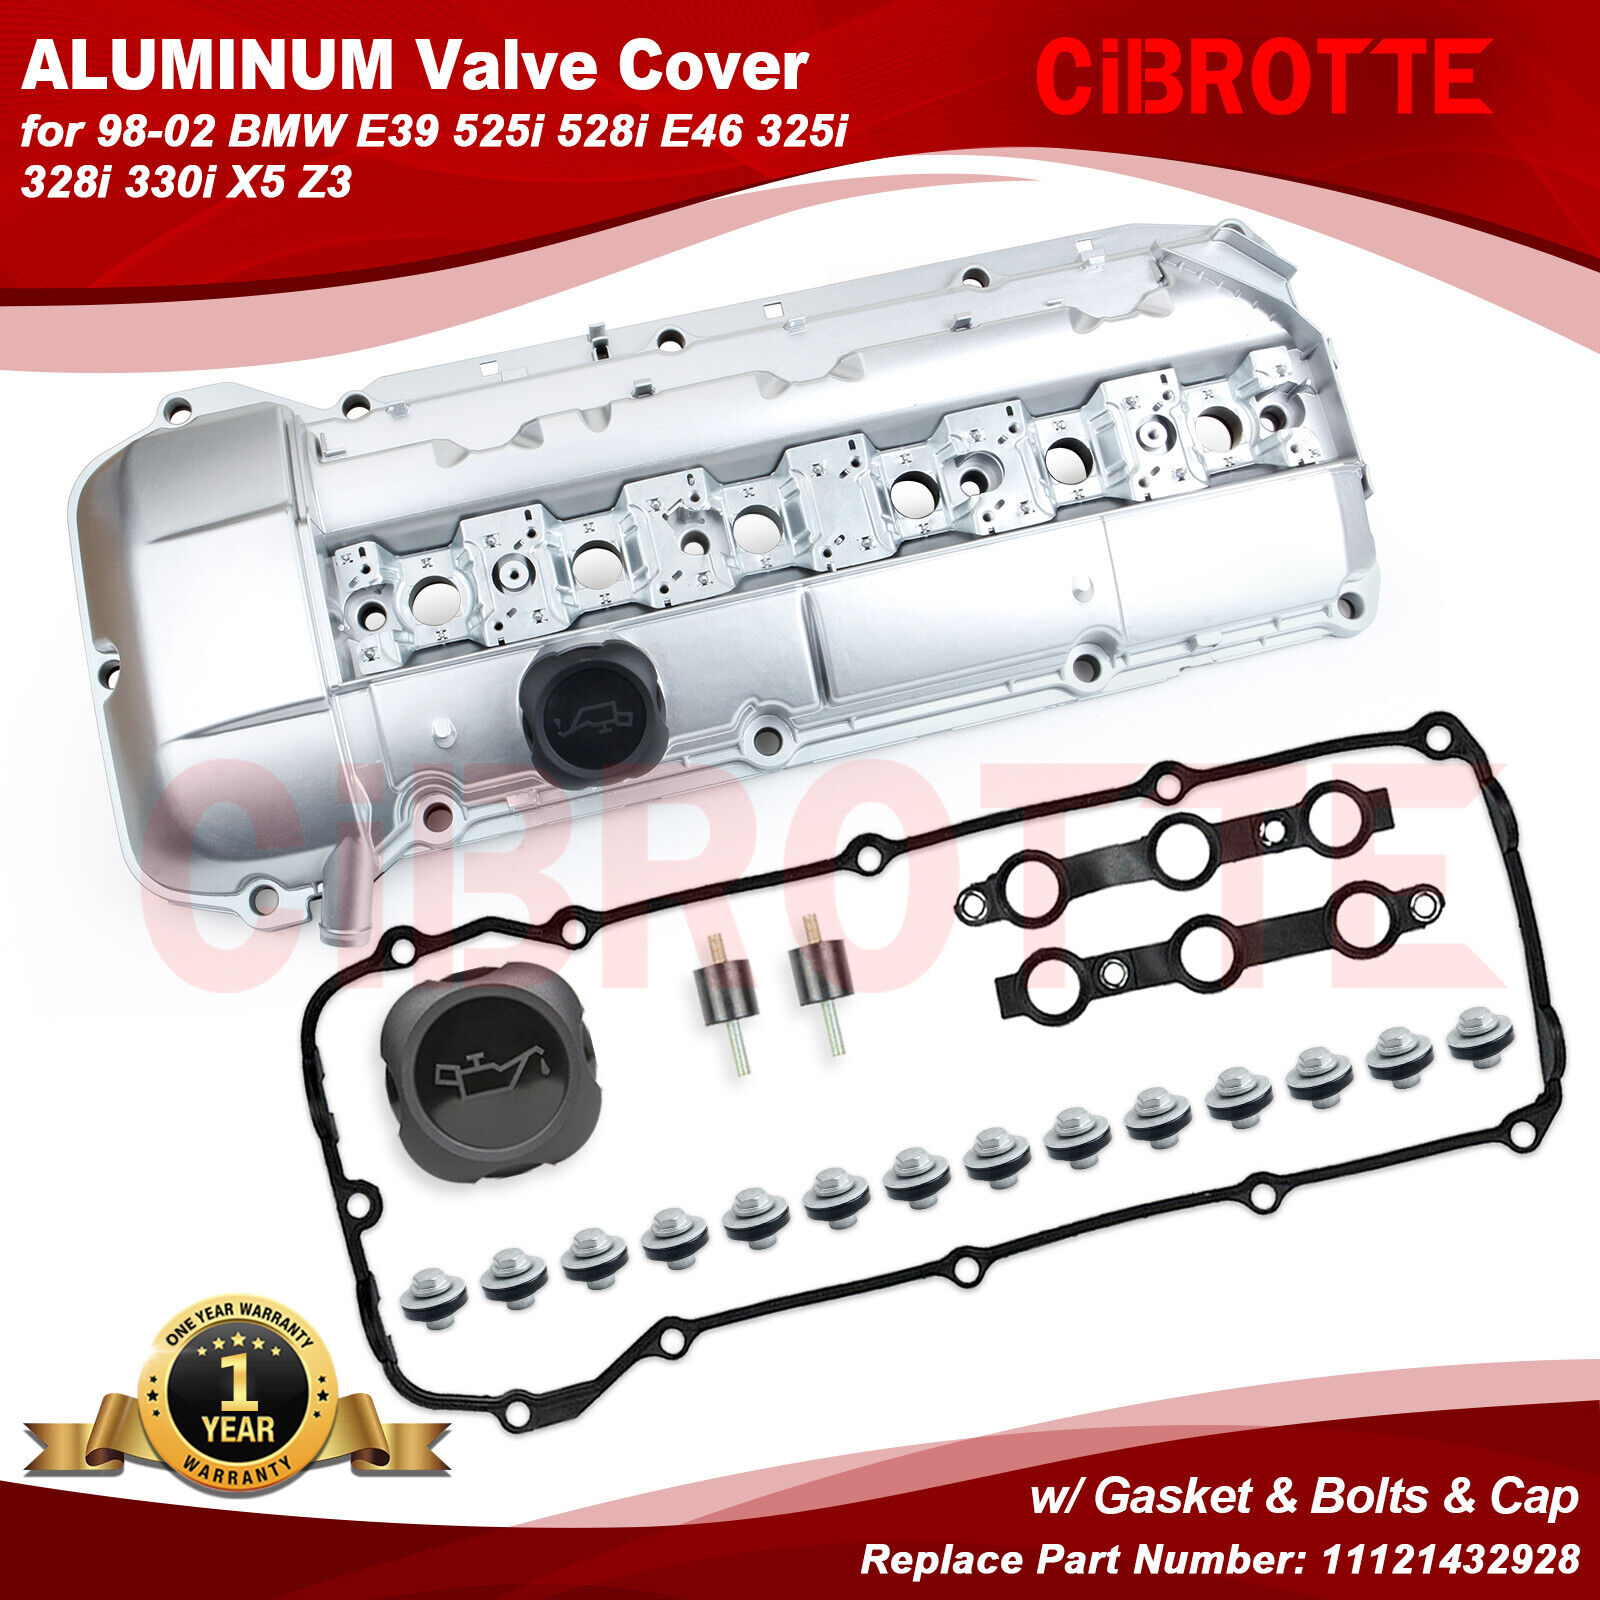 Upgrade Performance Aluminum Valve Cover for 98-02 BMW E39 E46 325i 328i 330i👍